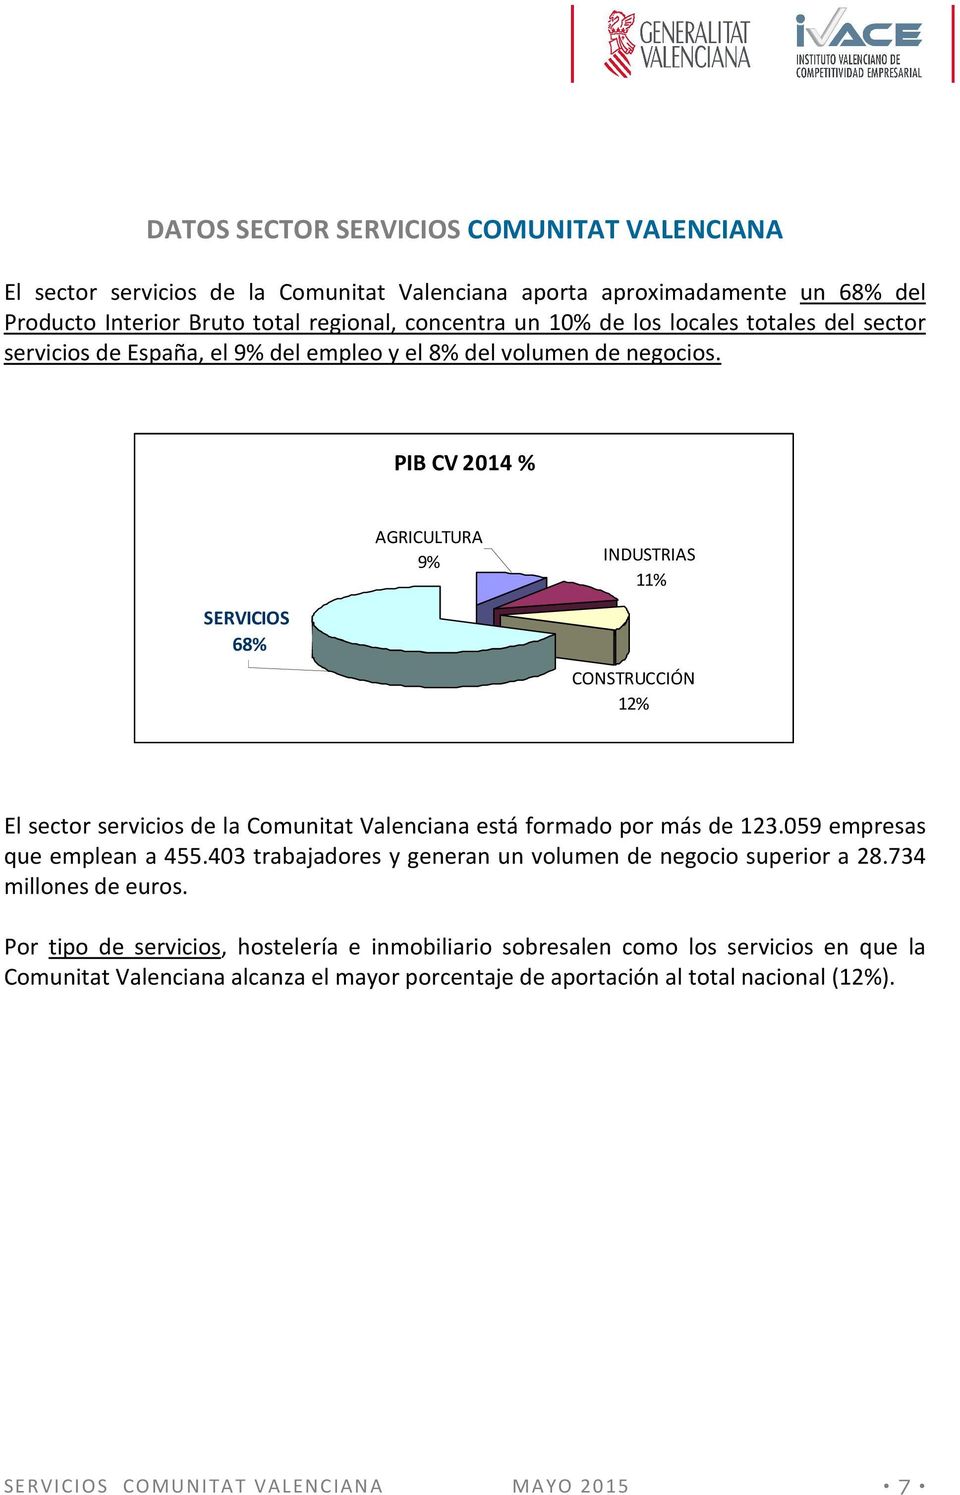 PIB CV 2014 % AGRICULTURA 9% INDUSTRIAS 11% SERVICIOS 68% CONSTRUCCIÓN 12% El sector servicios de la Comunitat Valenciana está formado por más de 123.059 empresas que emplean a 455.